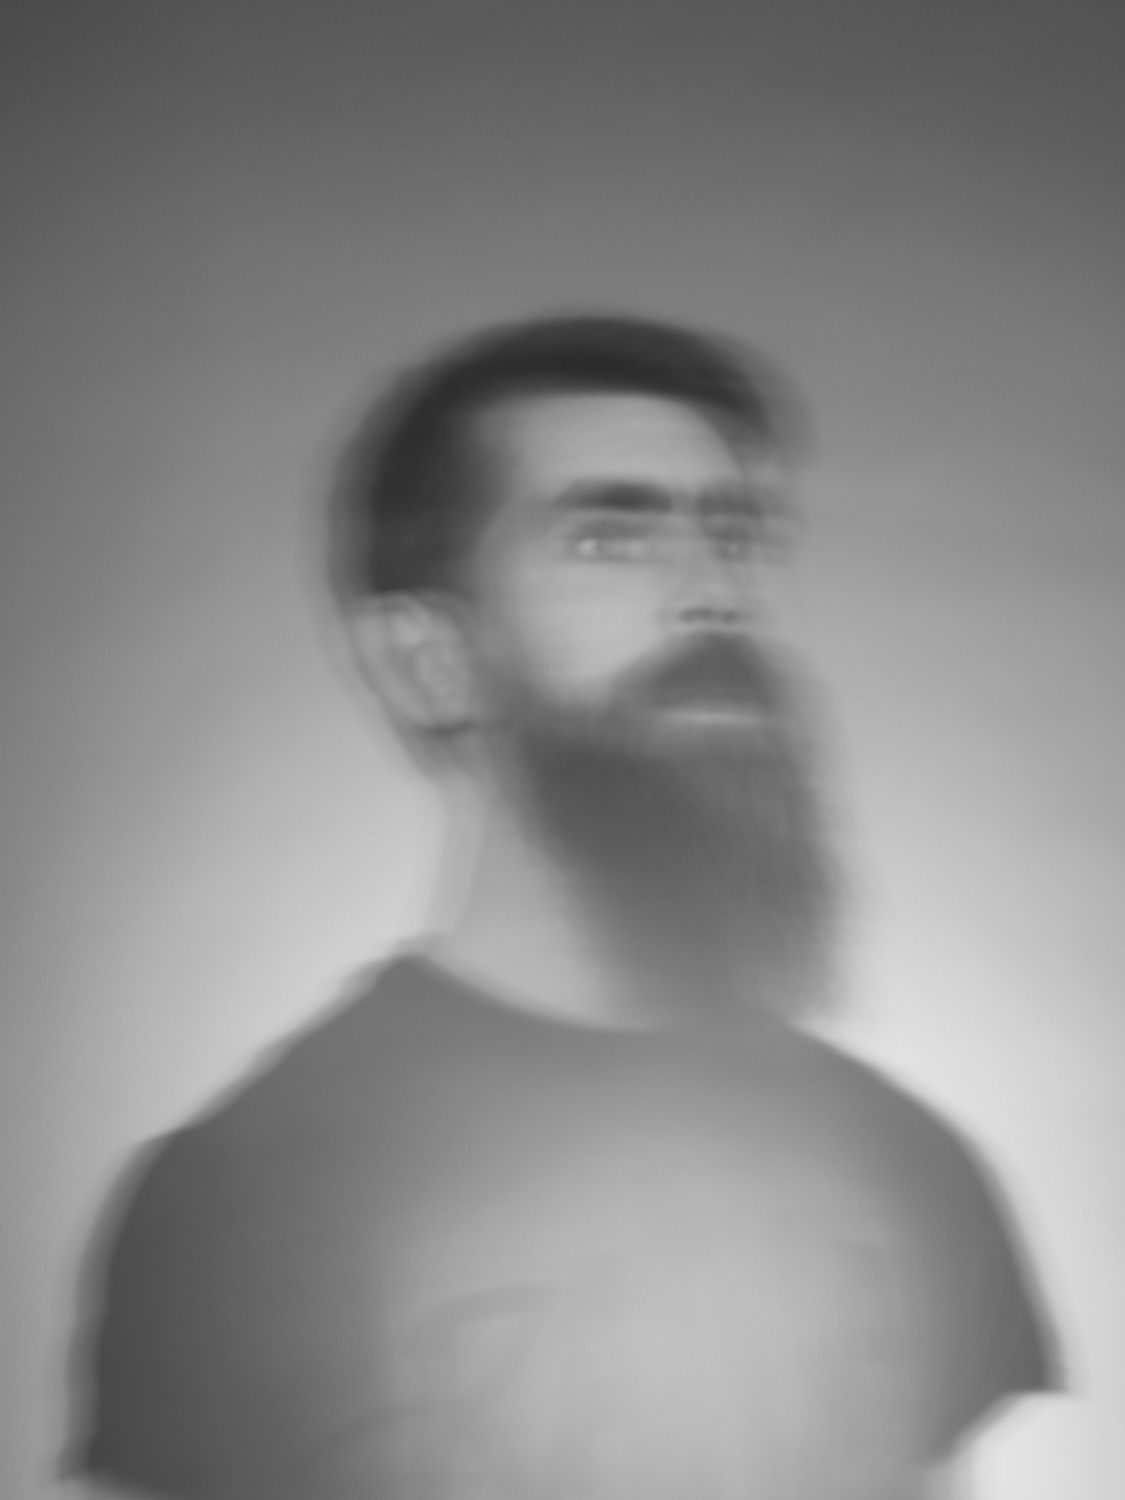 Portrait im Studio mit leichter Unschärfe in Schwarz-Weiß